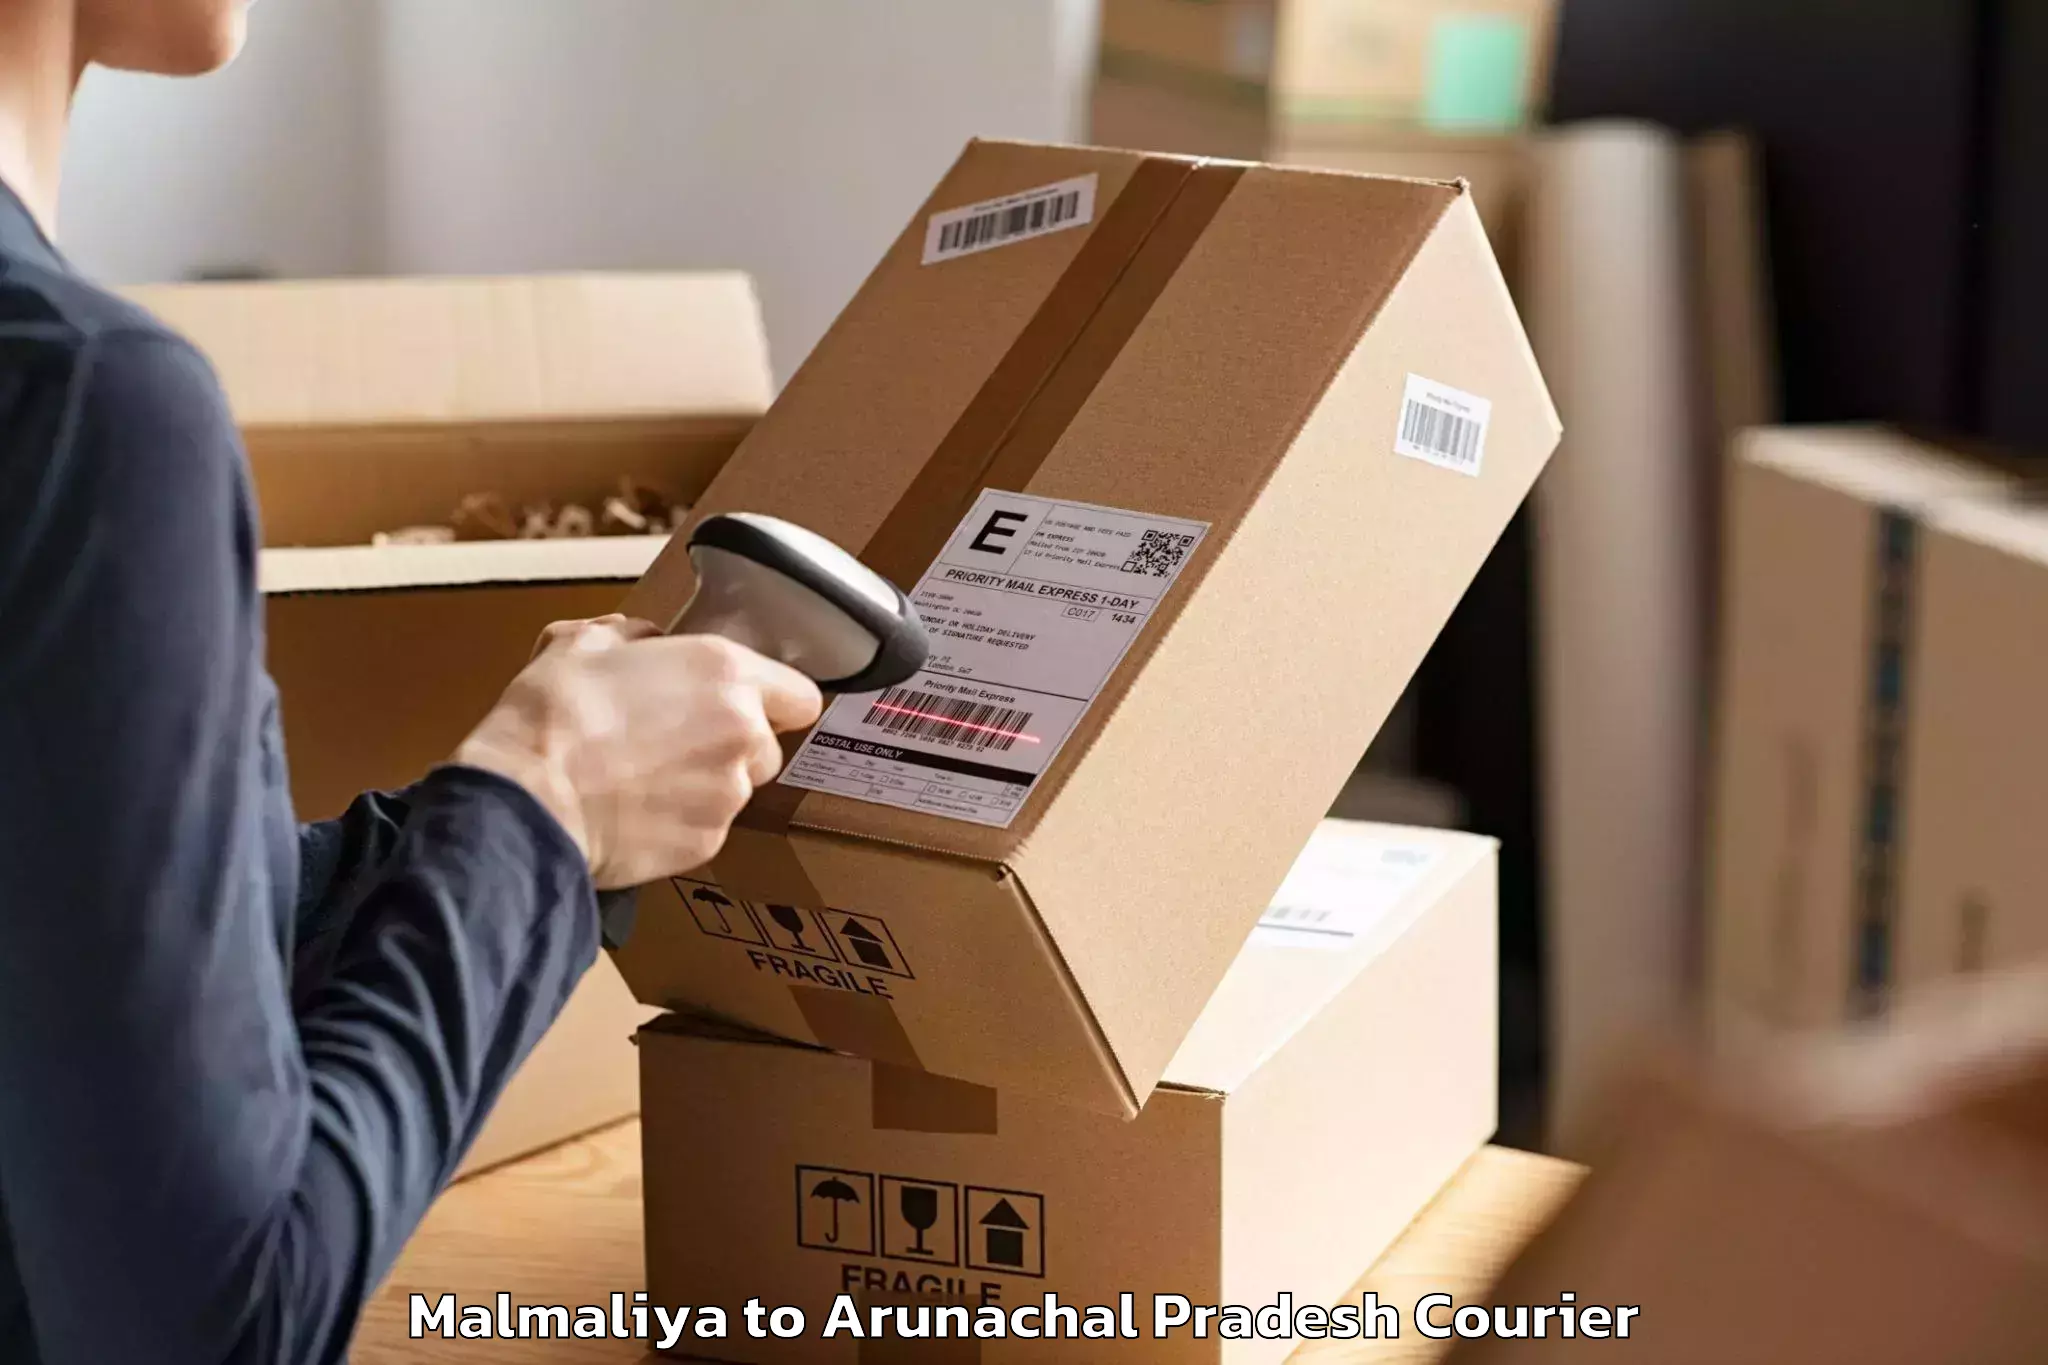 Efficient packing and moving Malmaliya to Lohit